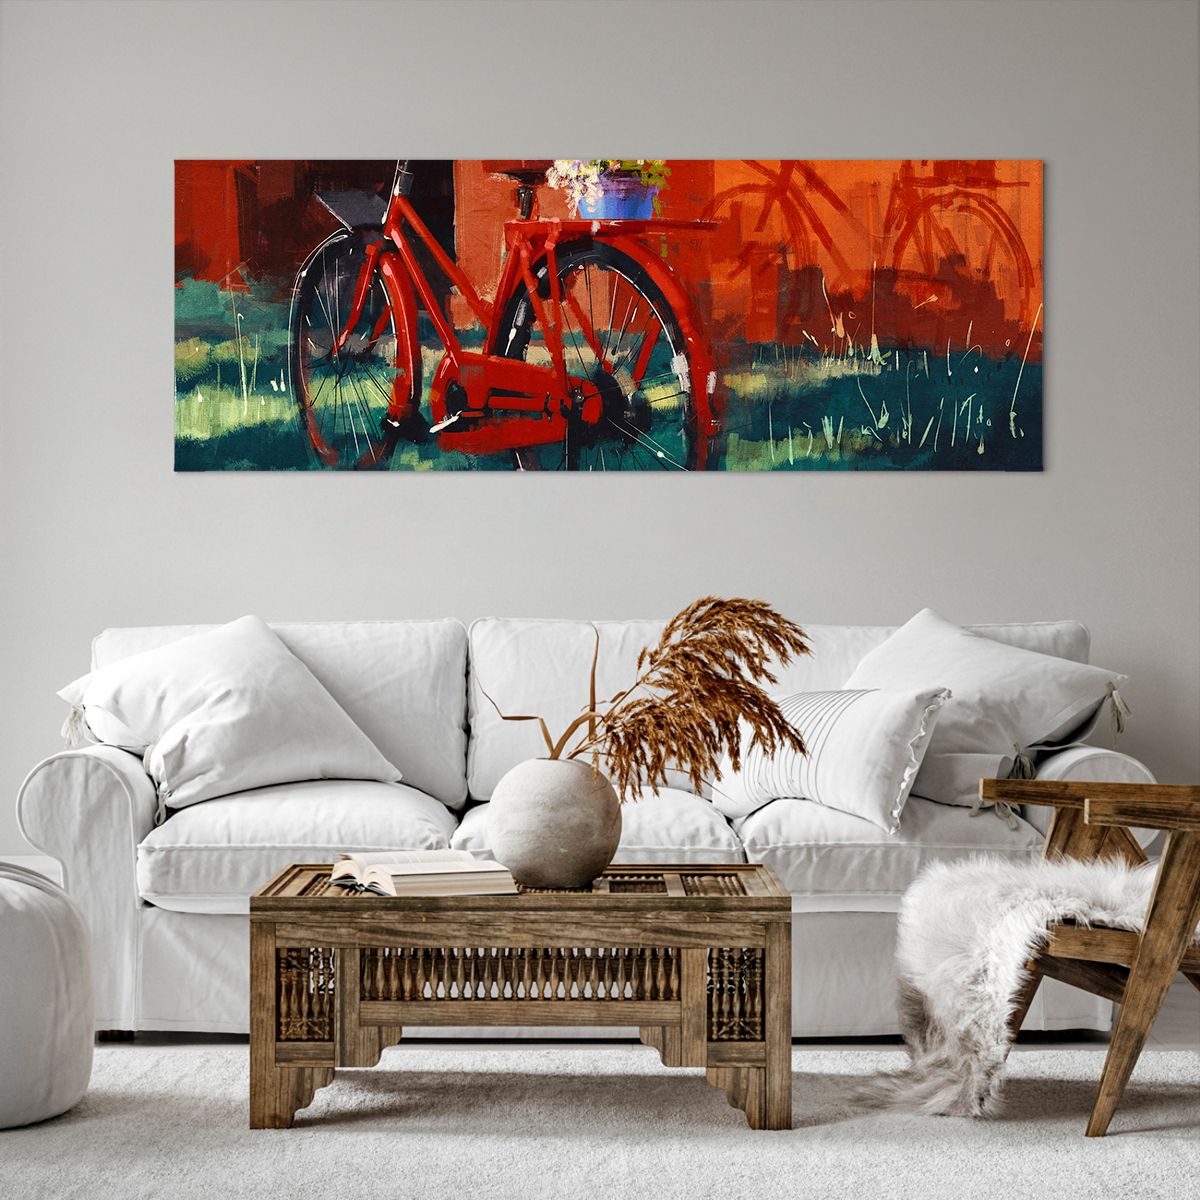 Bild auf Leinwand Oldtimer-Fahrrad, Bild auf Leinwand Blumen Im Topf, Bild auf Leinwand Reise, Bild auf Leinwand Kunst, Bild auf Leinwand Malerei